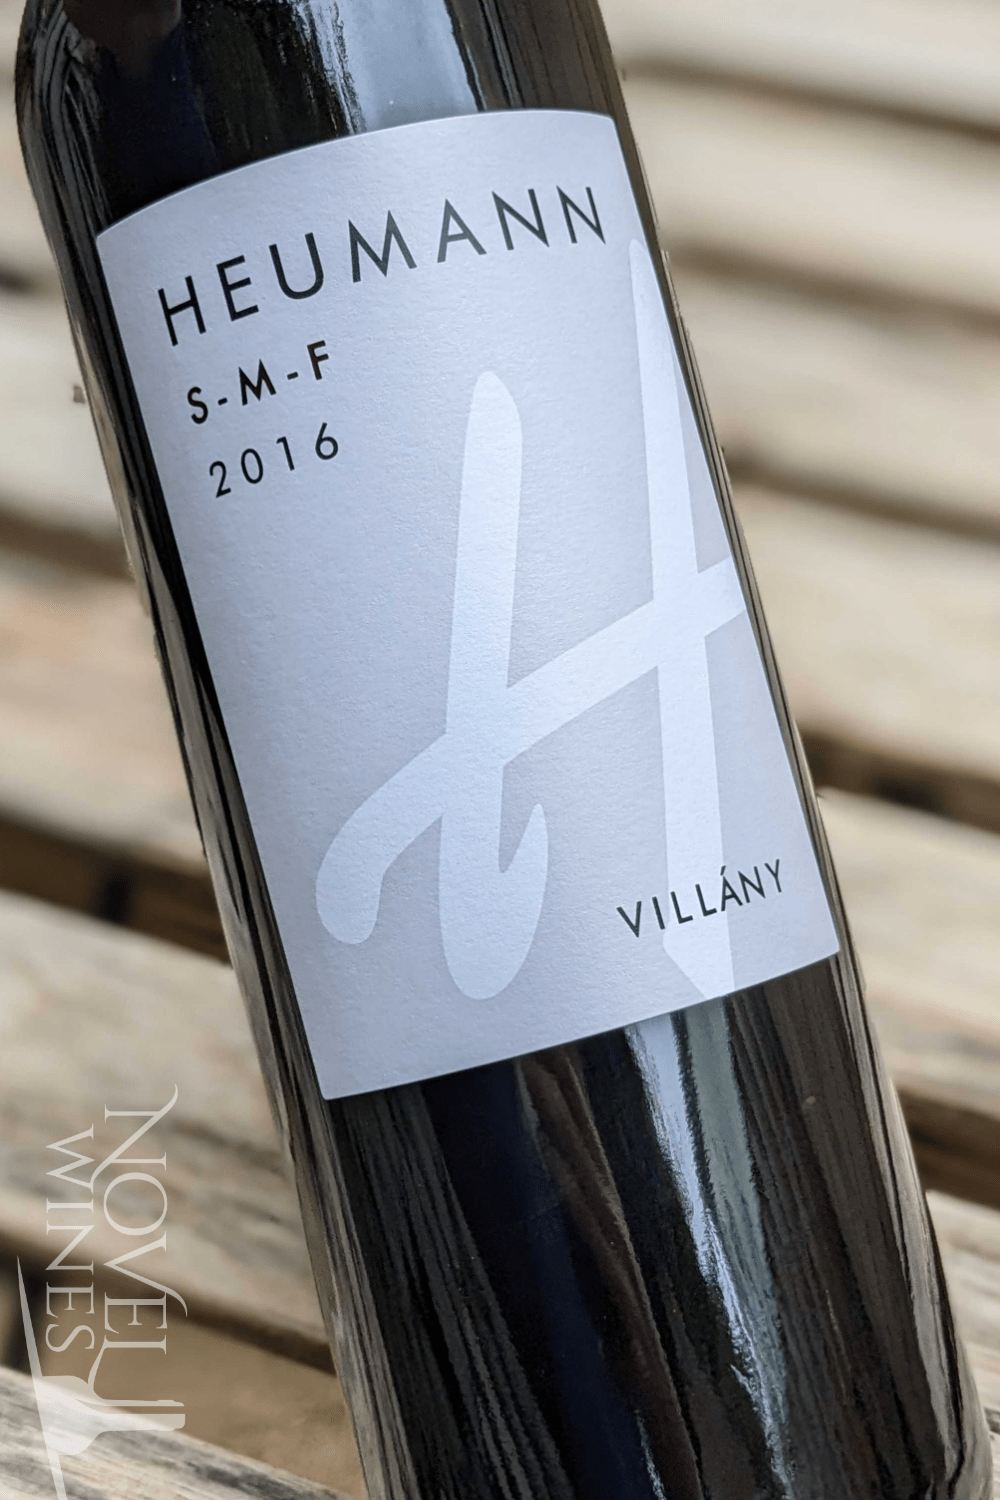 Heumann Red Wine Heumann S-M-F Red Blend 2016, Hungary